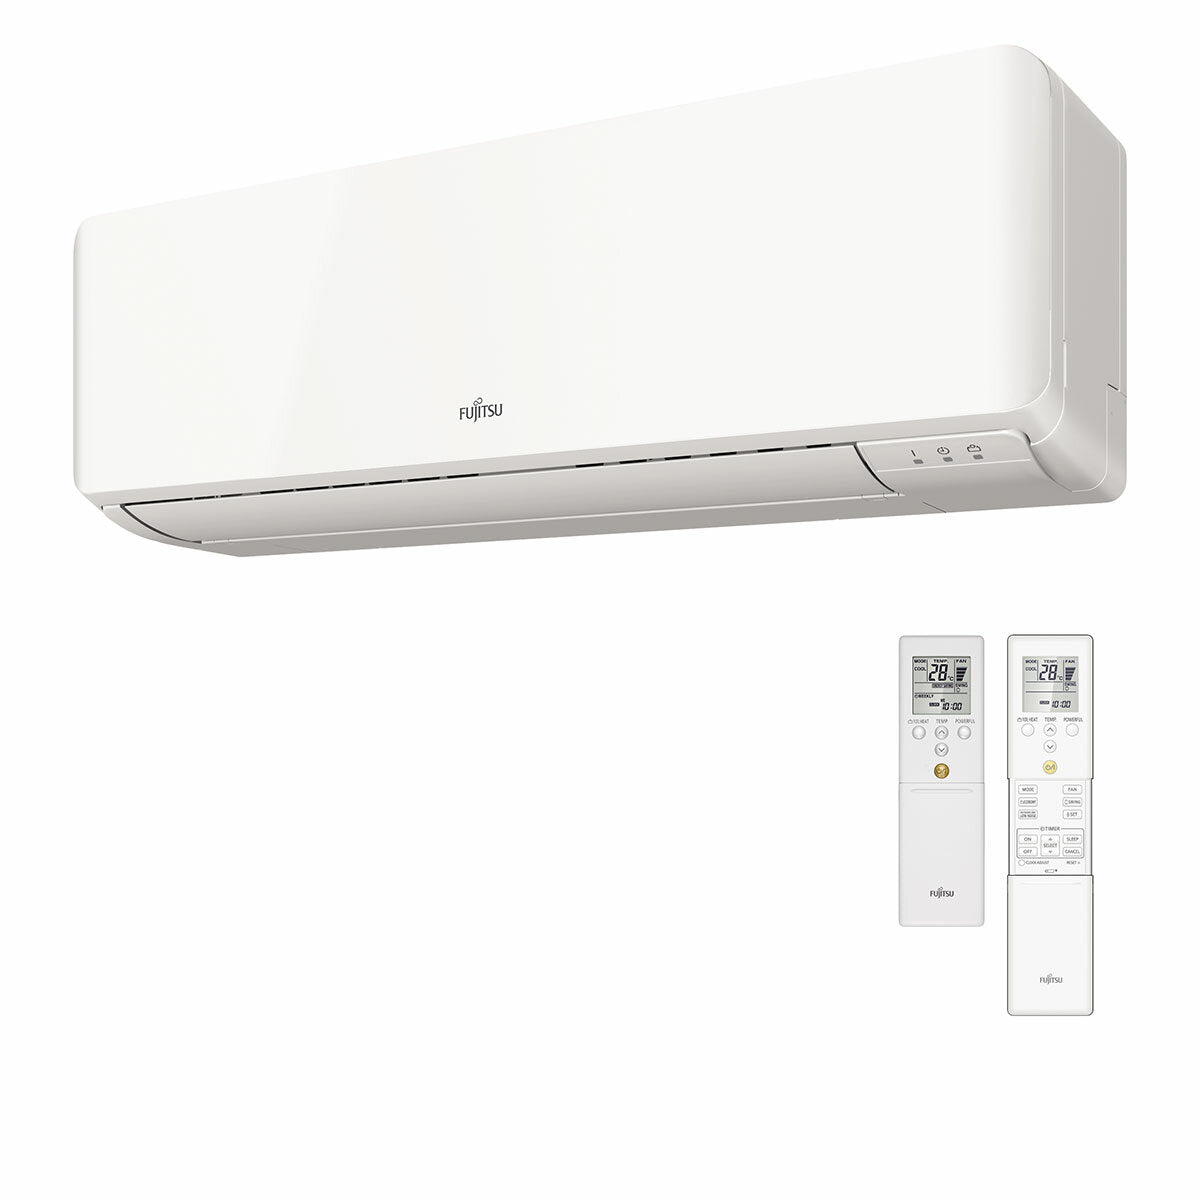 Fujitsu-Klimaanlage KM-WiFi Serie Testsplit 7000+9000+9000 BTU Wechselrichter A+++ WiFi Außeneinheit 5,4 kW